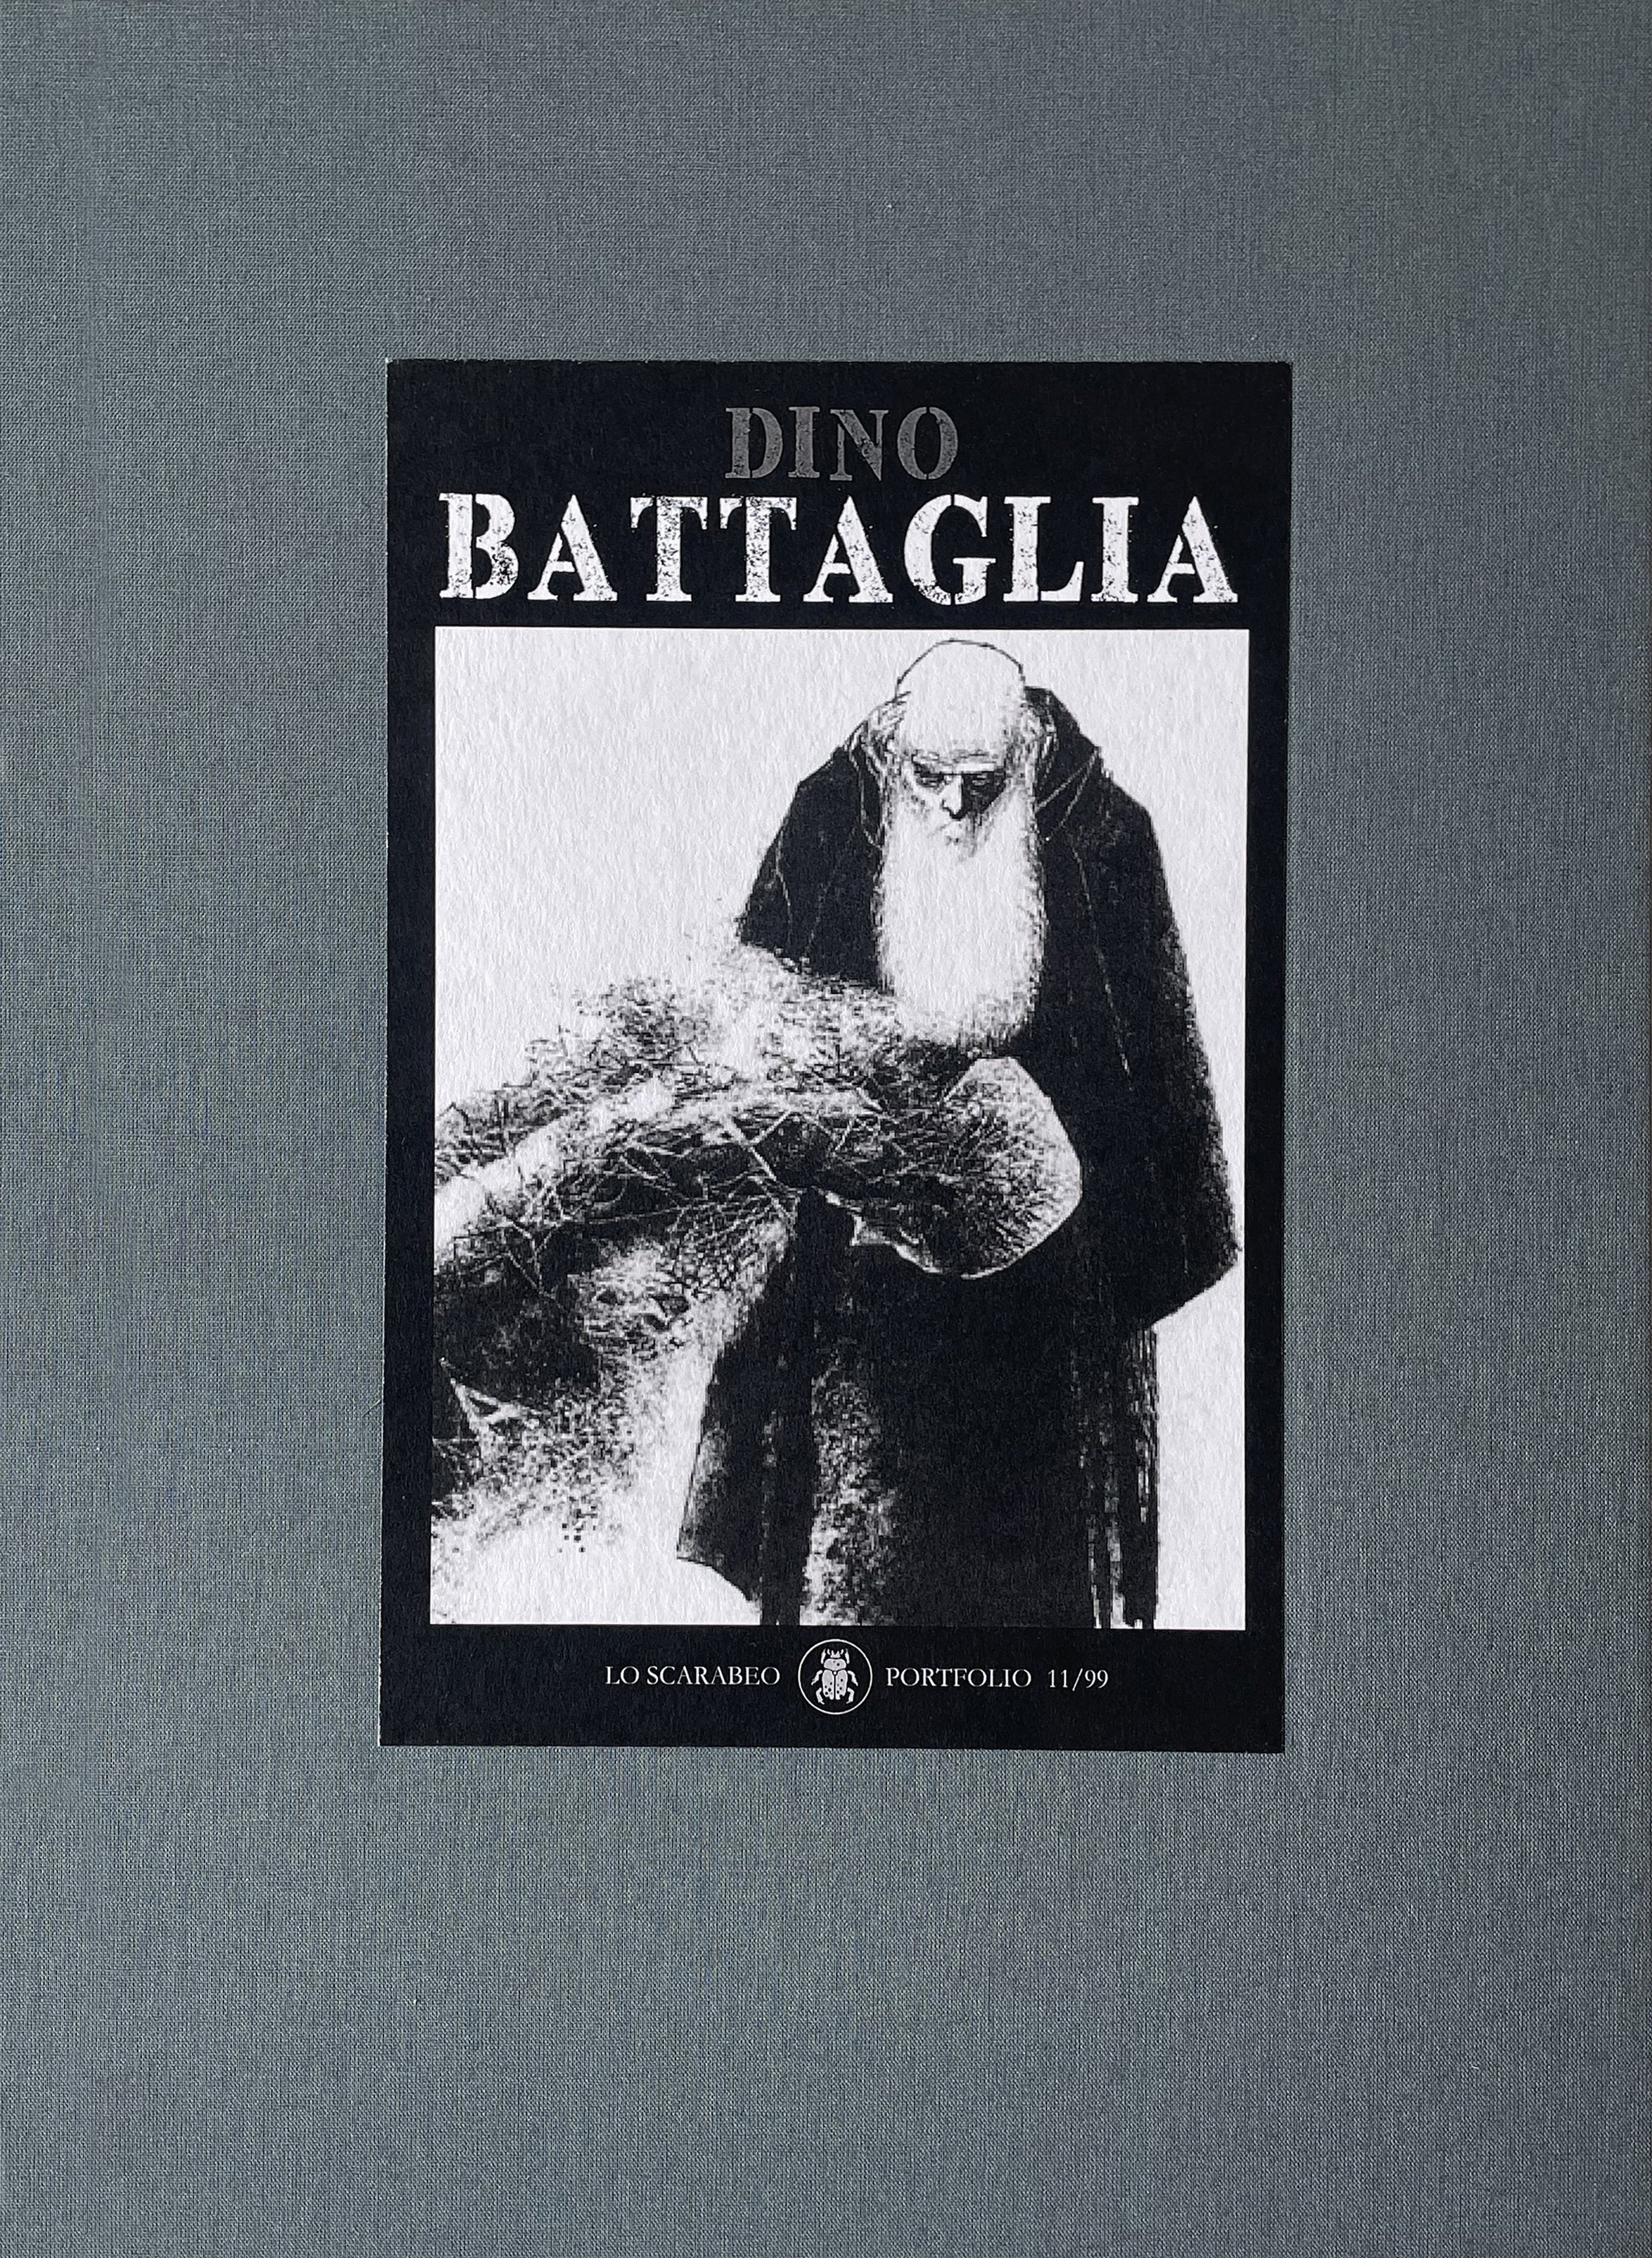 Dino Battaglia - Deluxe Limited Portfolio